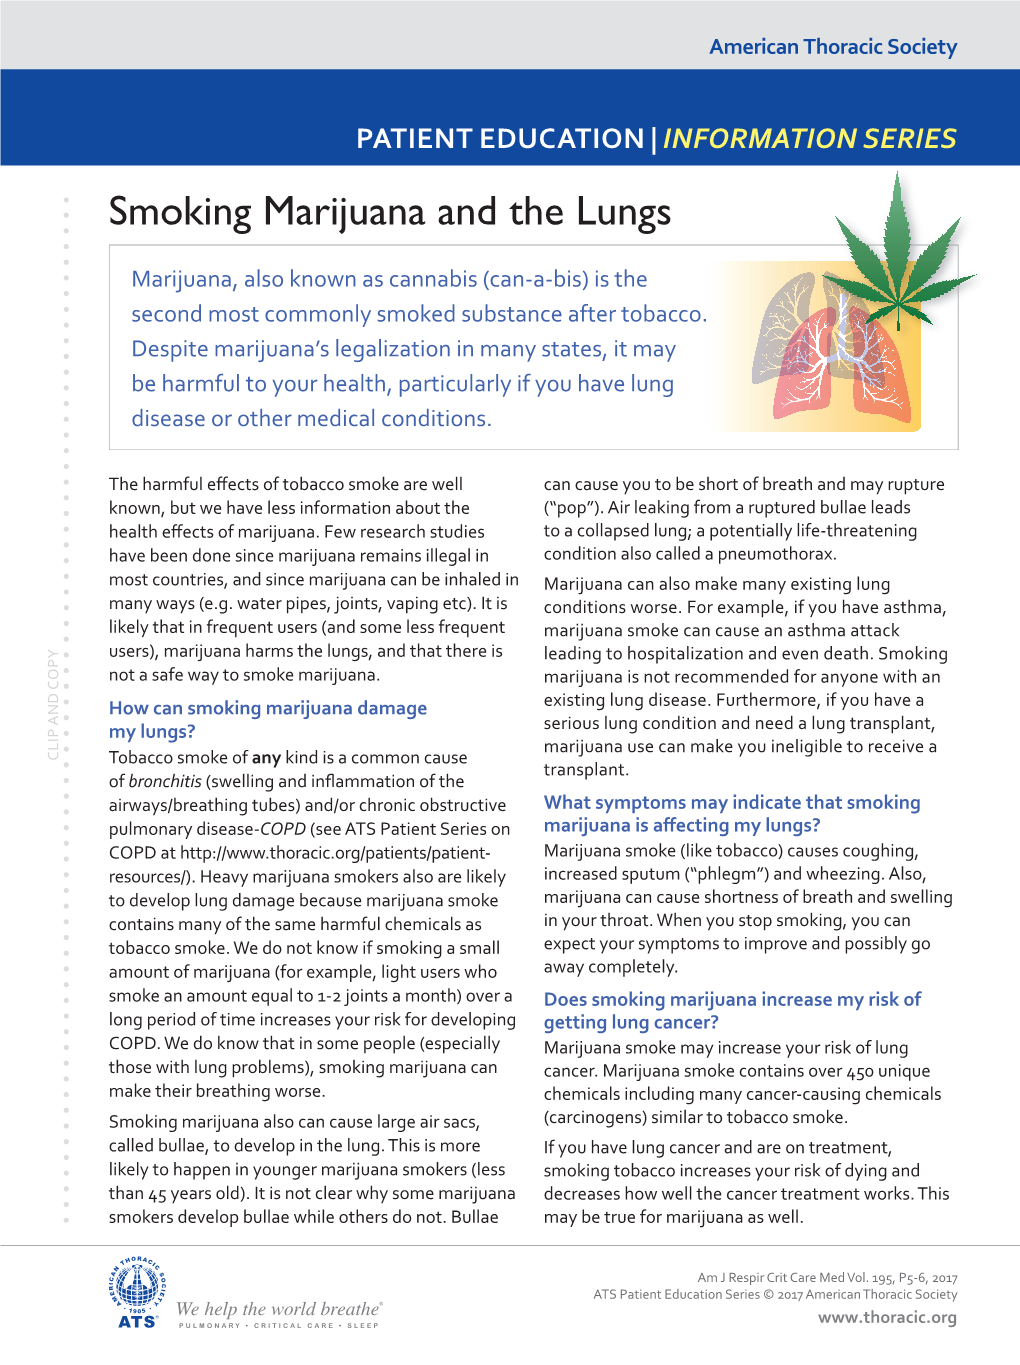 Smoking Marijuana and the Lungs